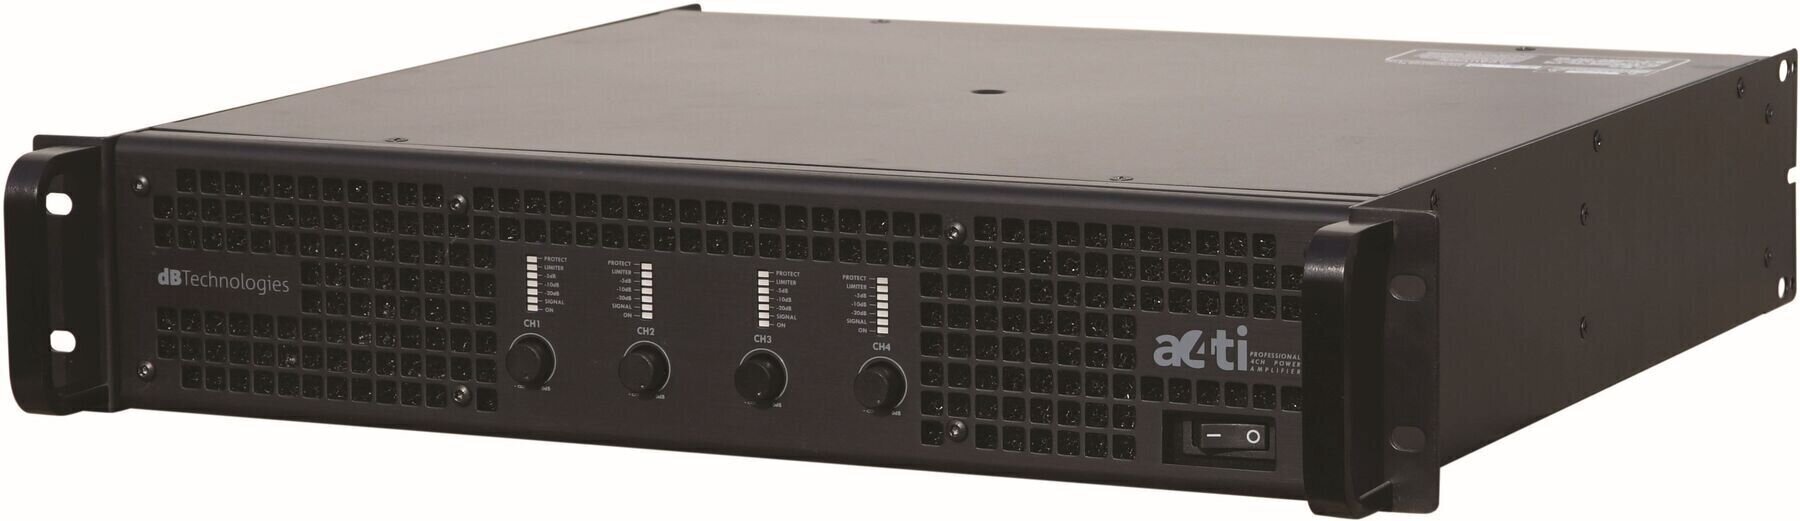 Power amplifier dB Technologies A4TI Power amplifier